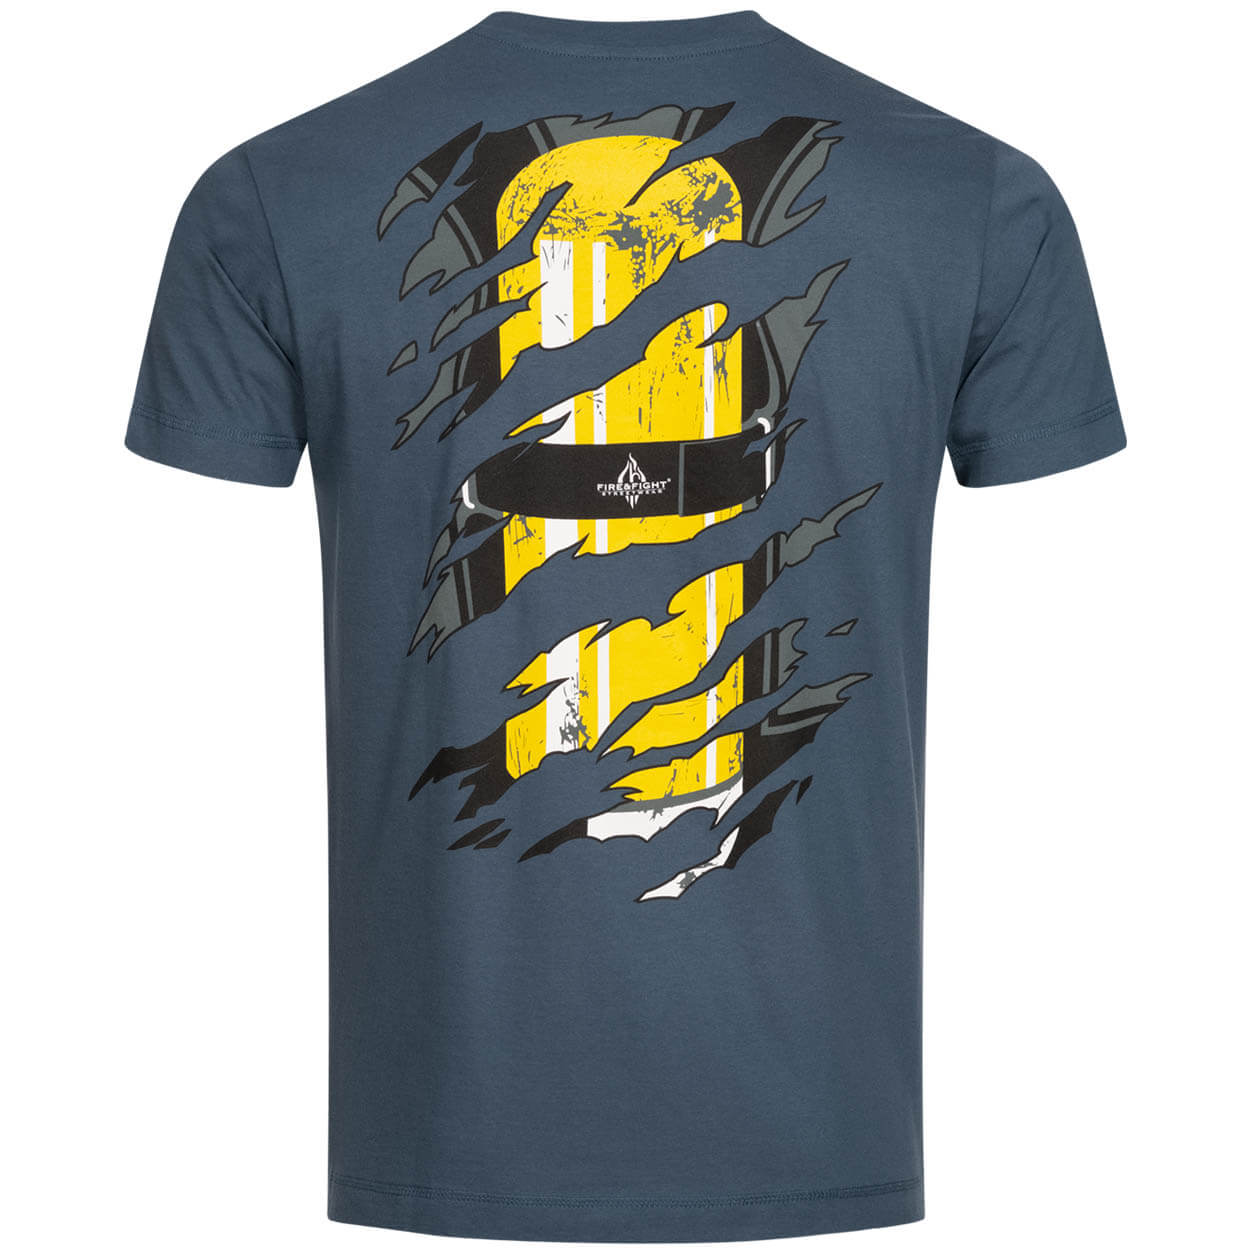 Einsatzkraft® INSIDE Feuerwehr Männer T-Shirt light navy